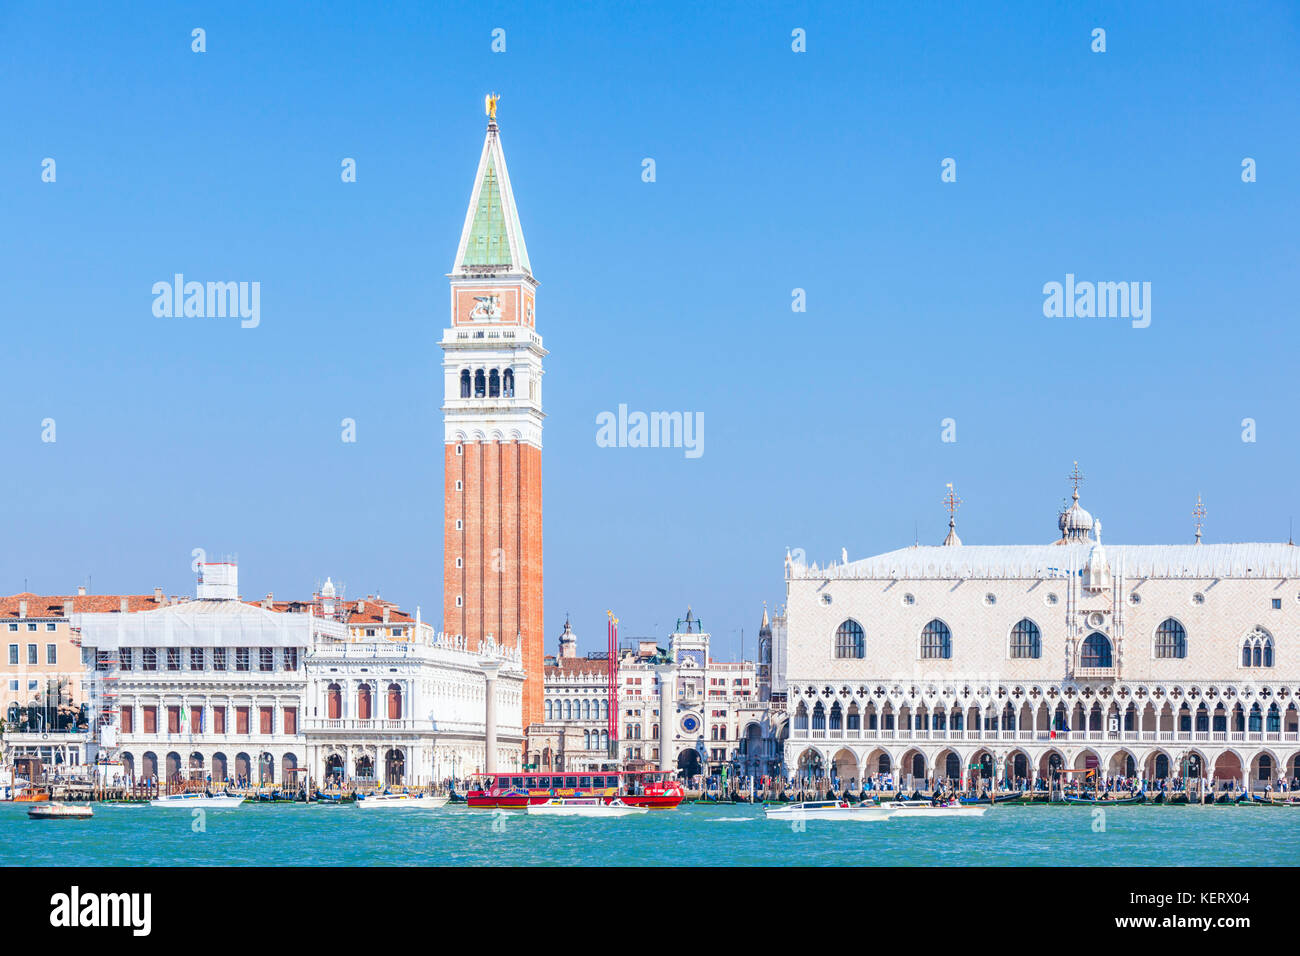 Venise ITALIE VENISE Occupé Bacino San Marco à Venise avec des bateaux-taxis et vaparettos le palais des Doges et le campanile Venise Italie Europe de l'UE Banque D'Images